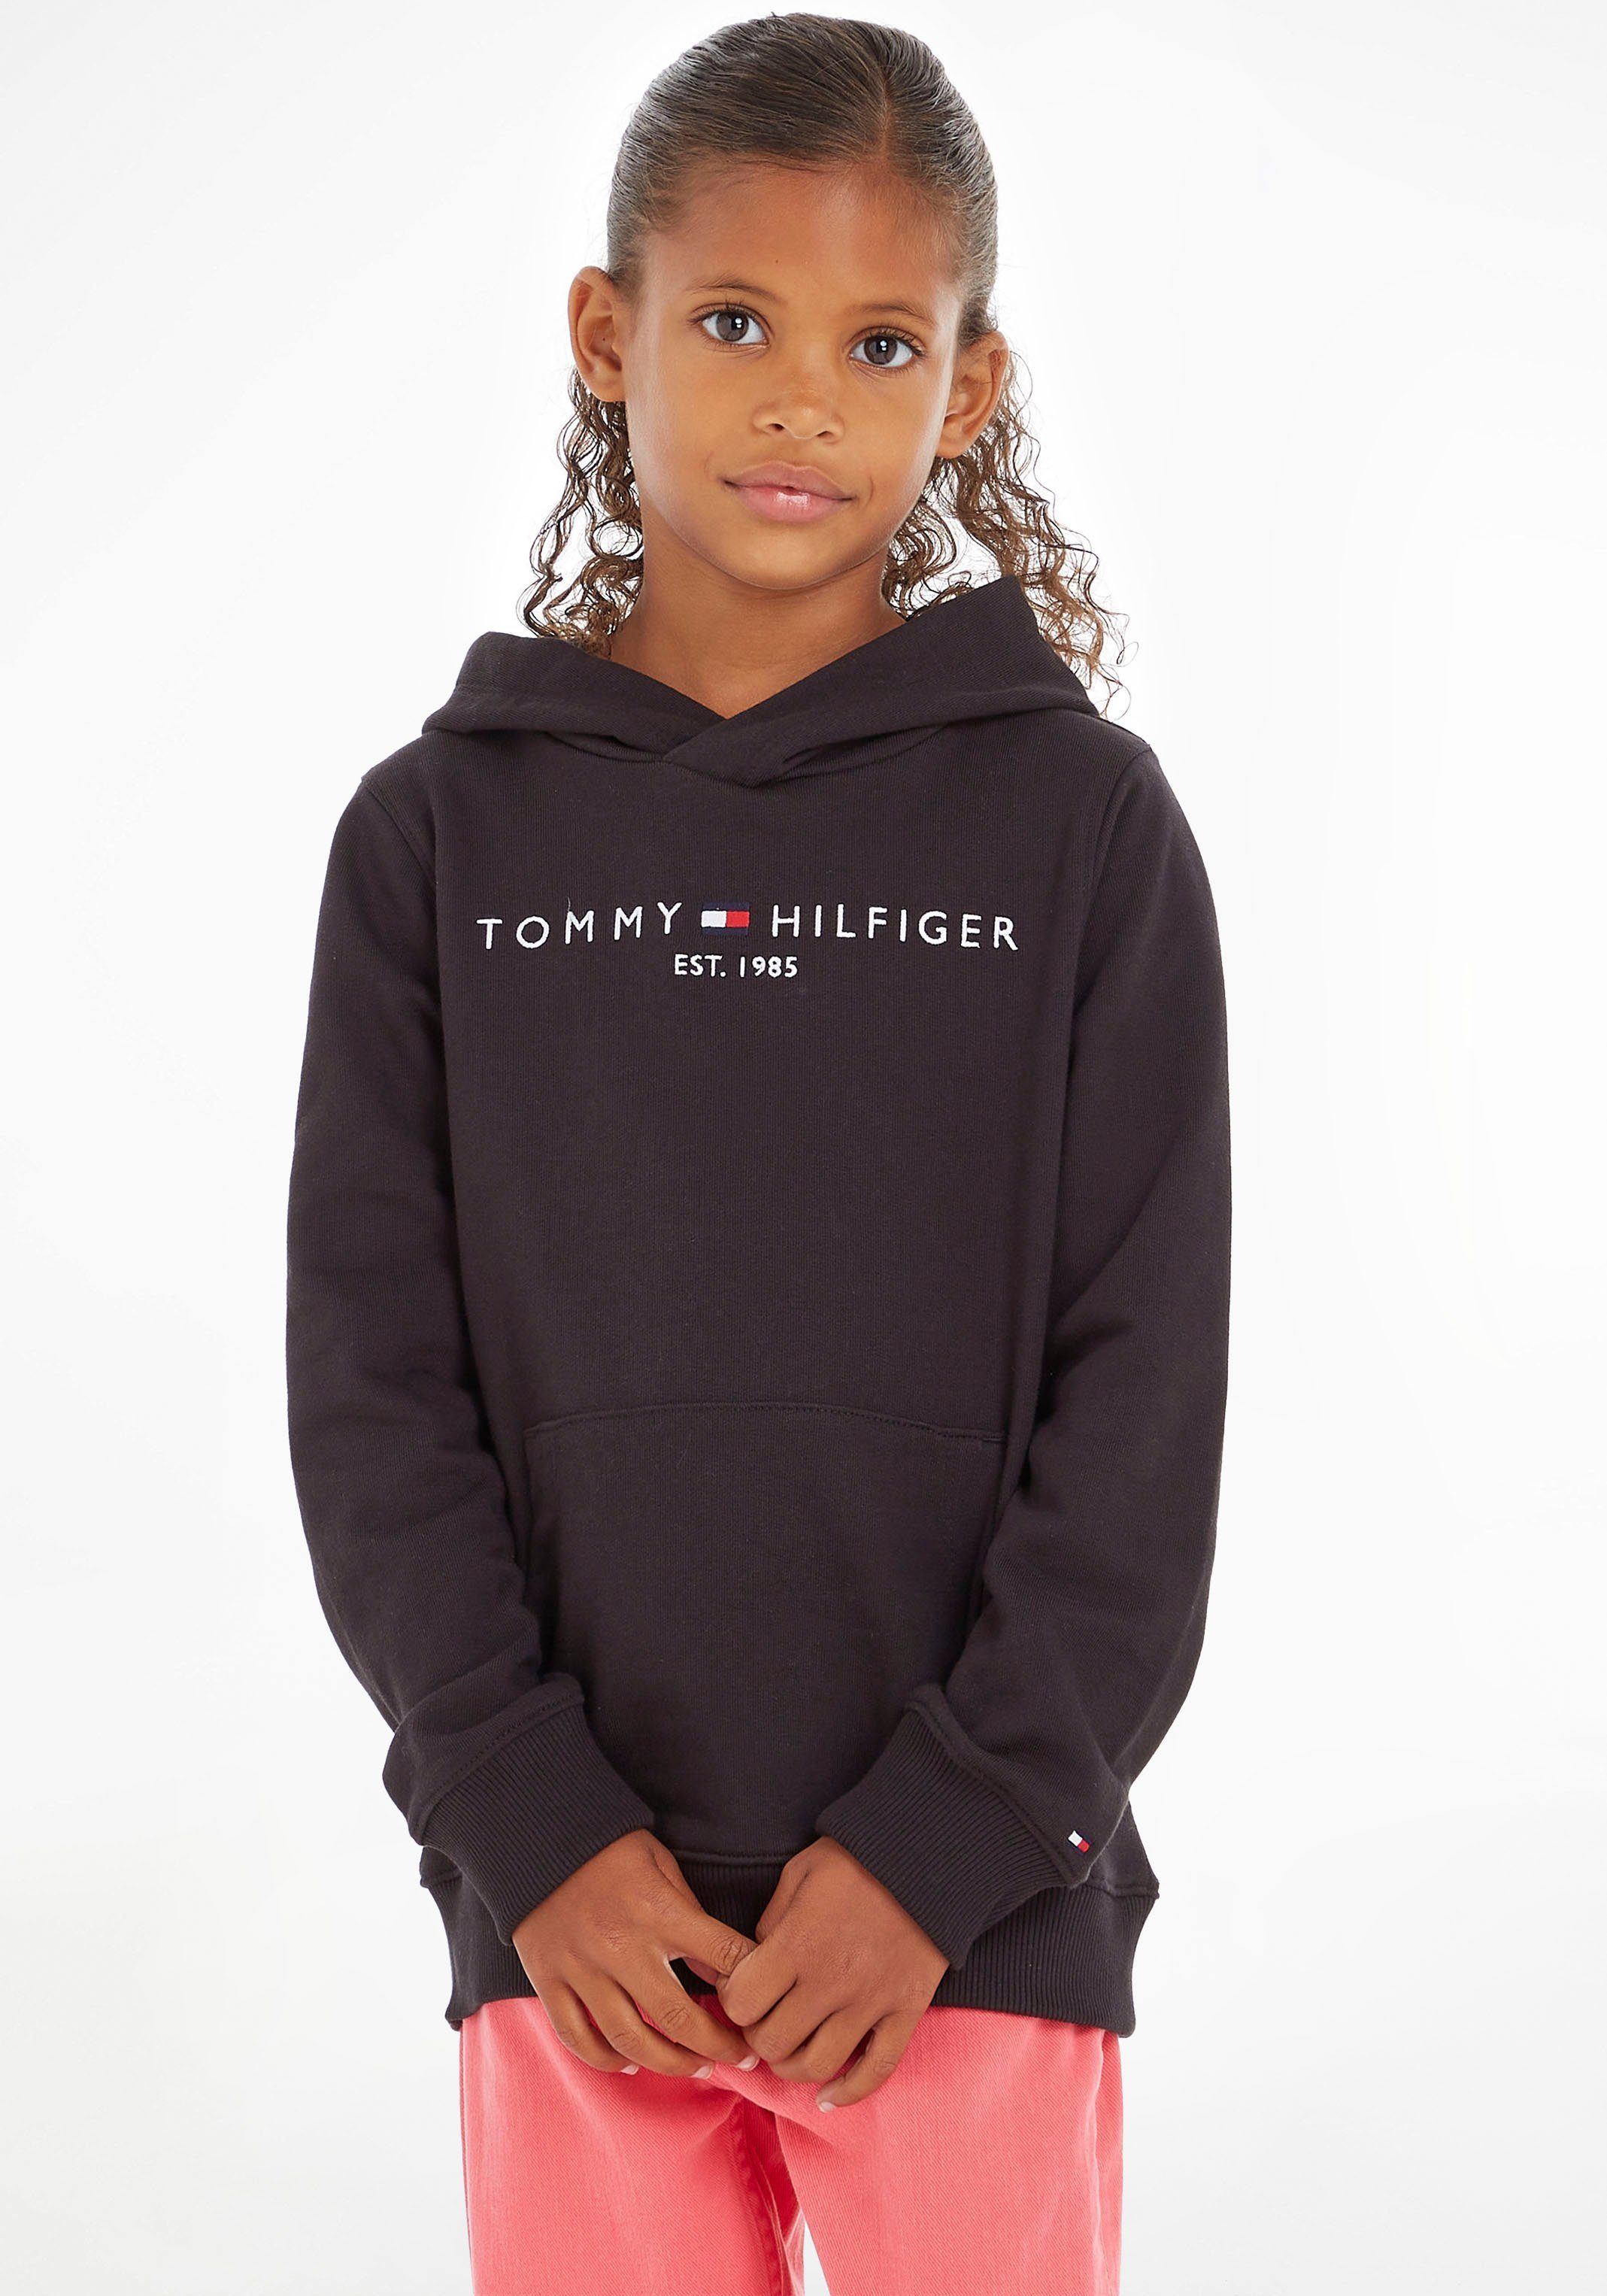 Tommy Hilfiger Kapuzensweatshirt ESSENTIAL HOODIE Jungen MiniMe,für Kids Junior Kinder Mädchen und